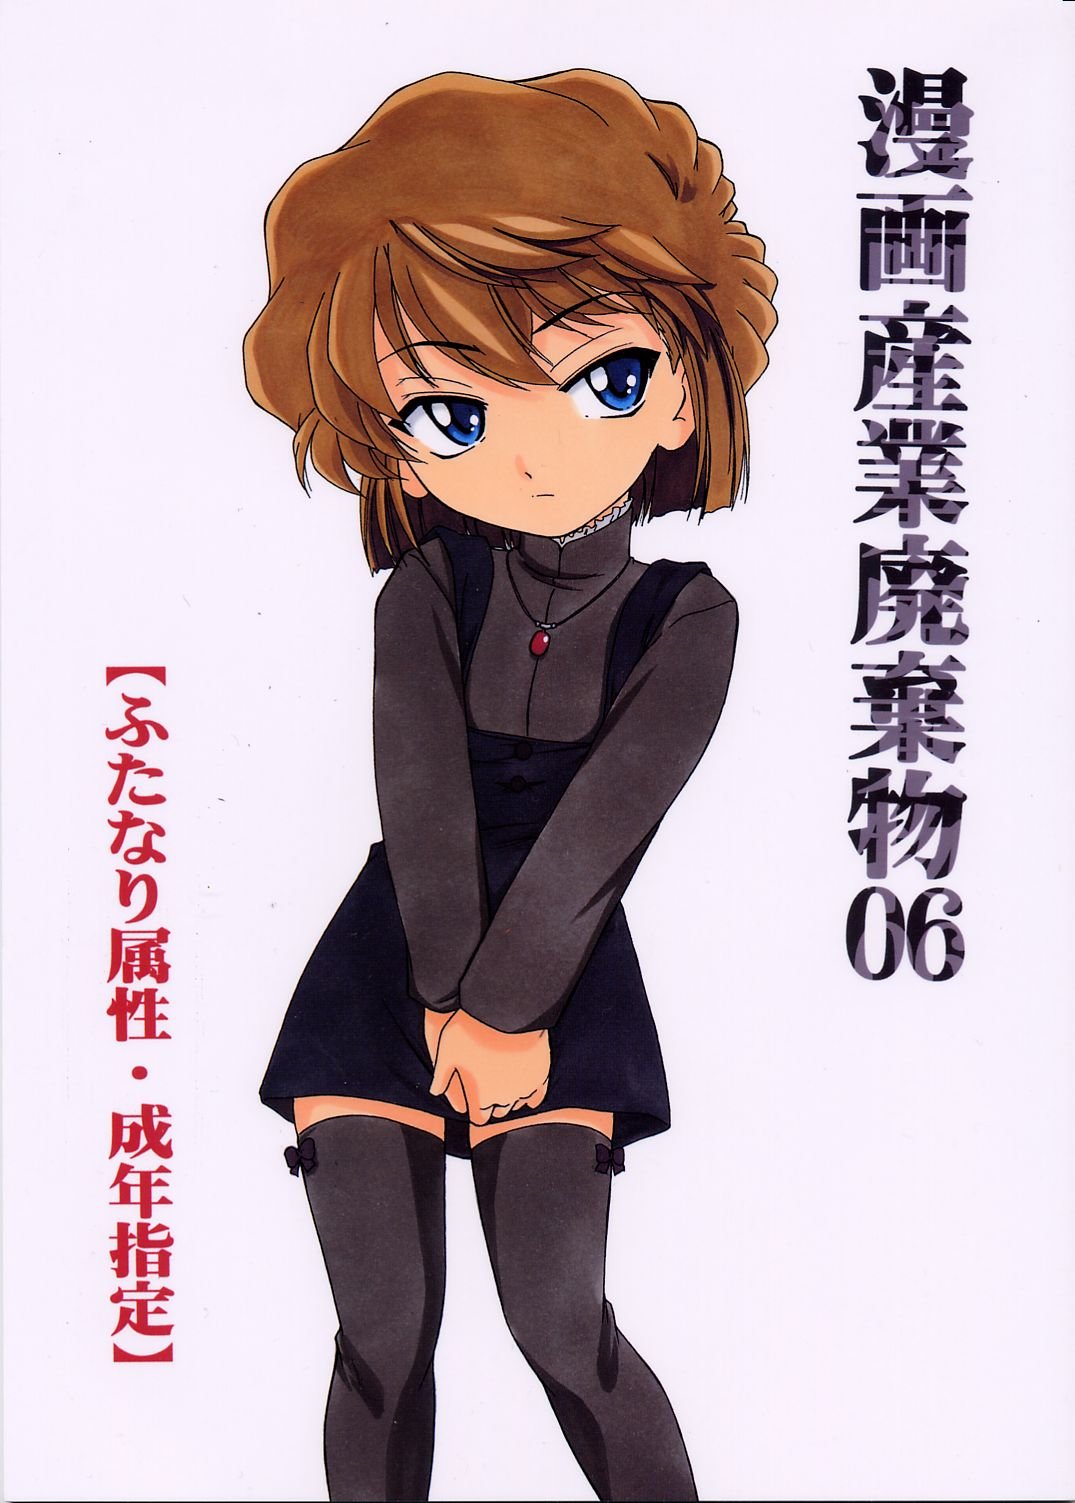 Manga Sangyou Haikibutsu 06 - 0